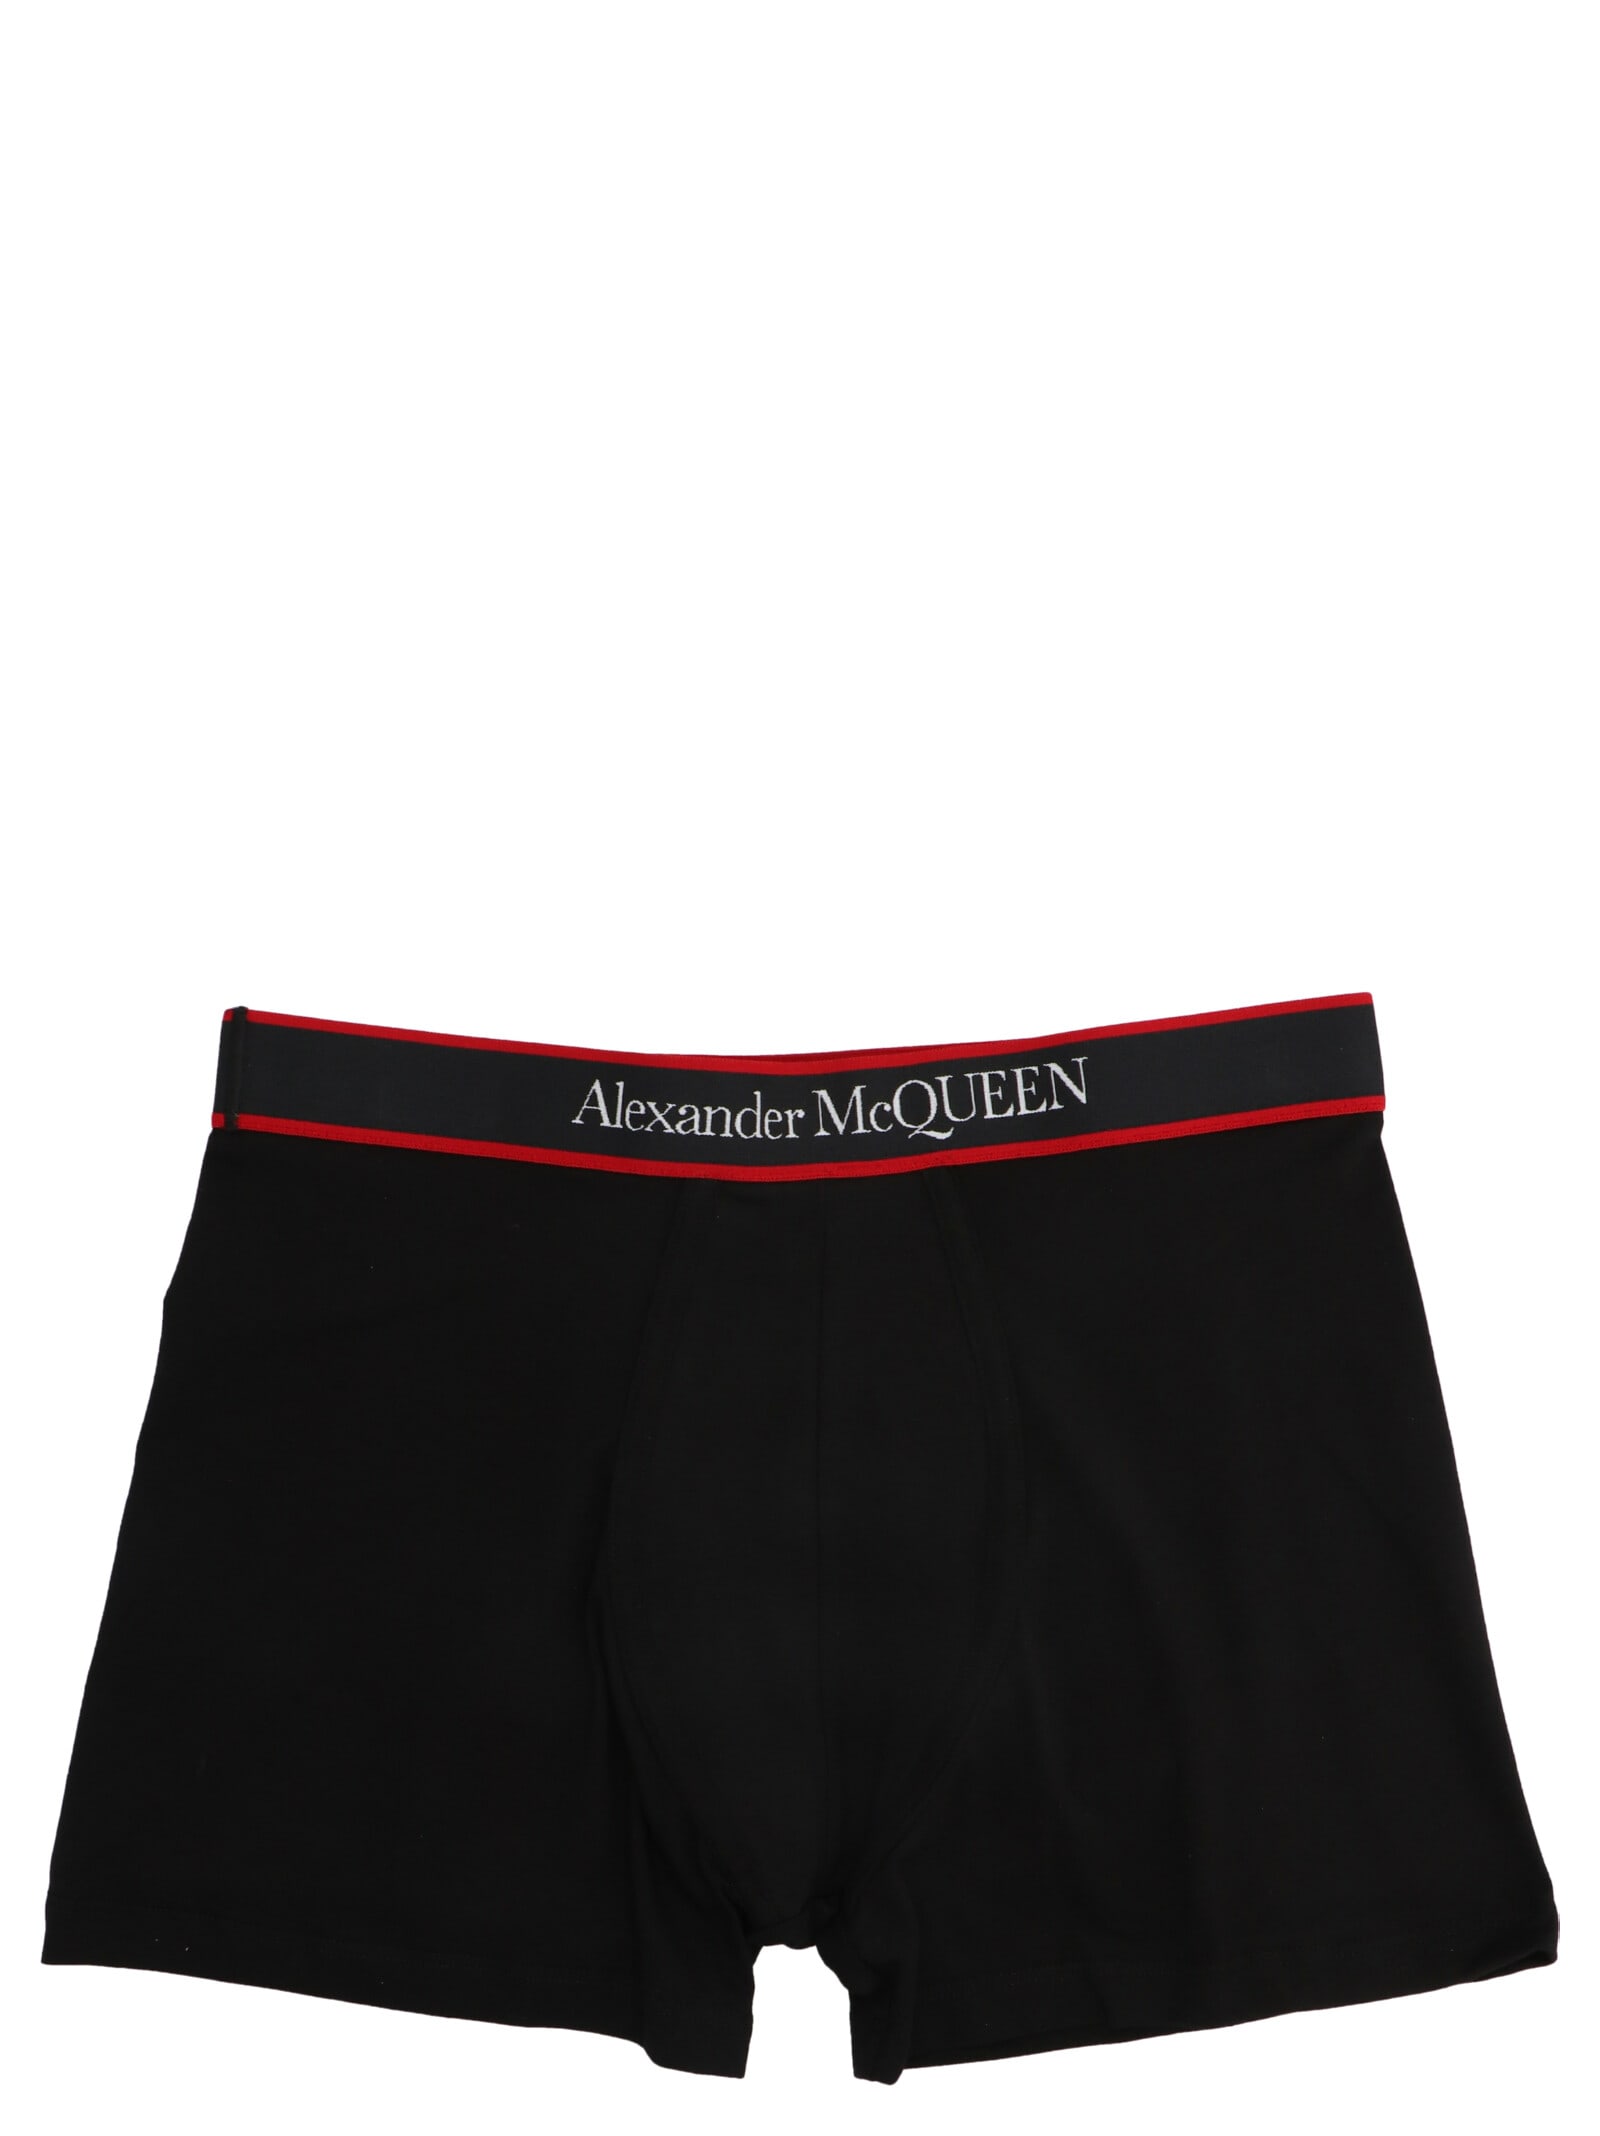 Alexander McQueen Logo Boxer Shorts